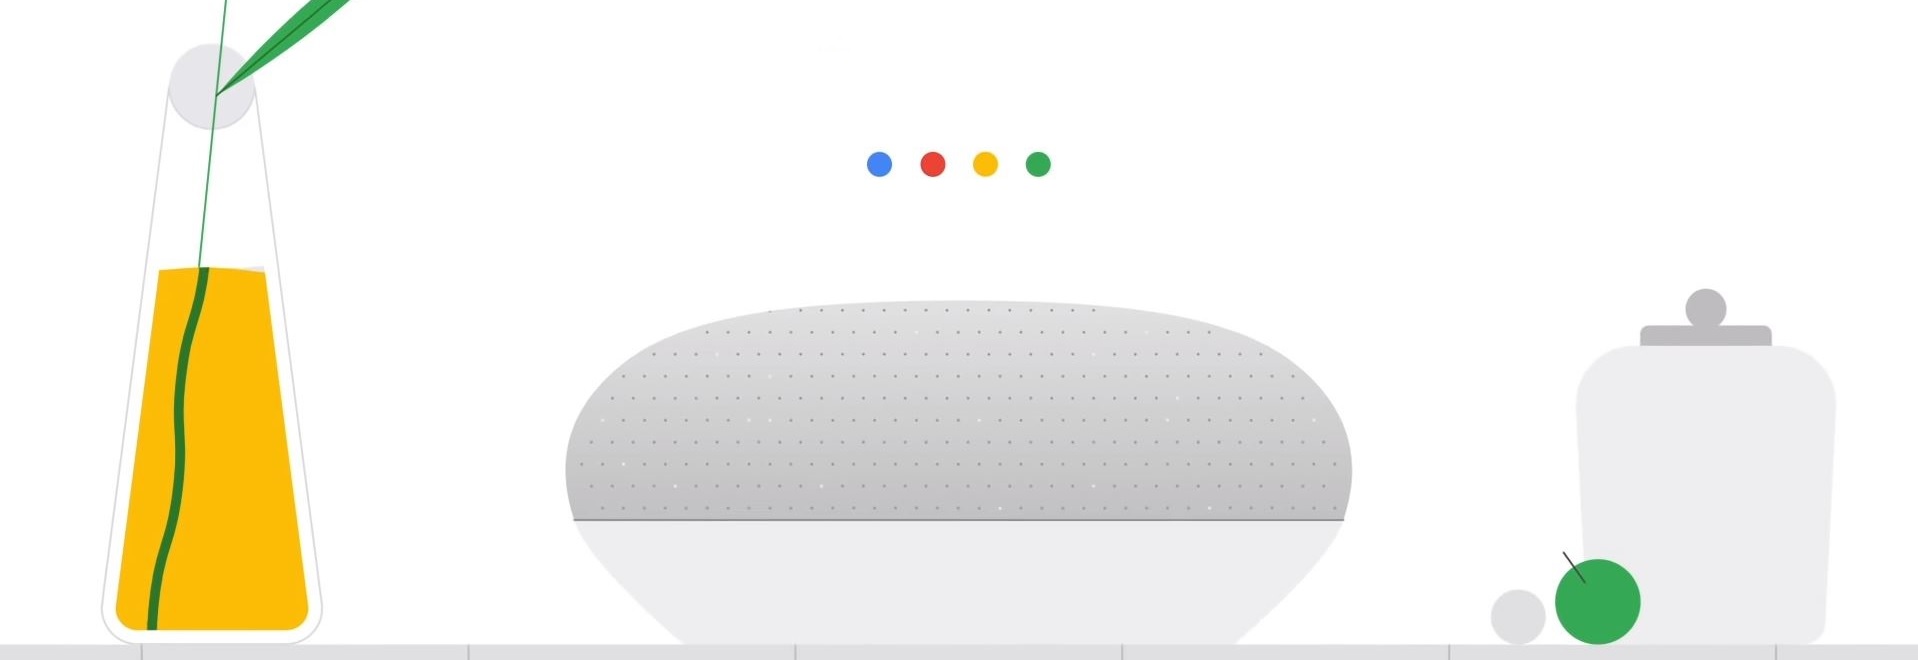 Google menambahkan rumah baru dan fitur privasi ke Voice Assistant 5